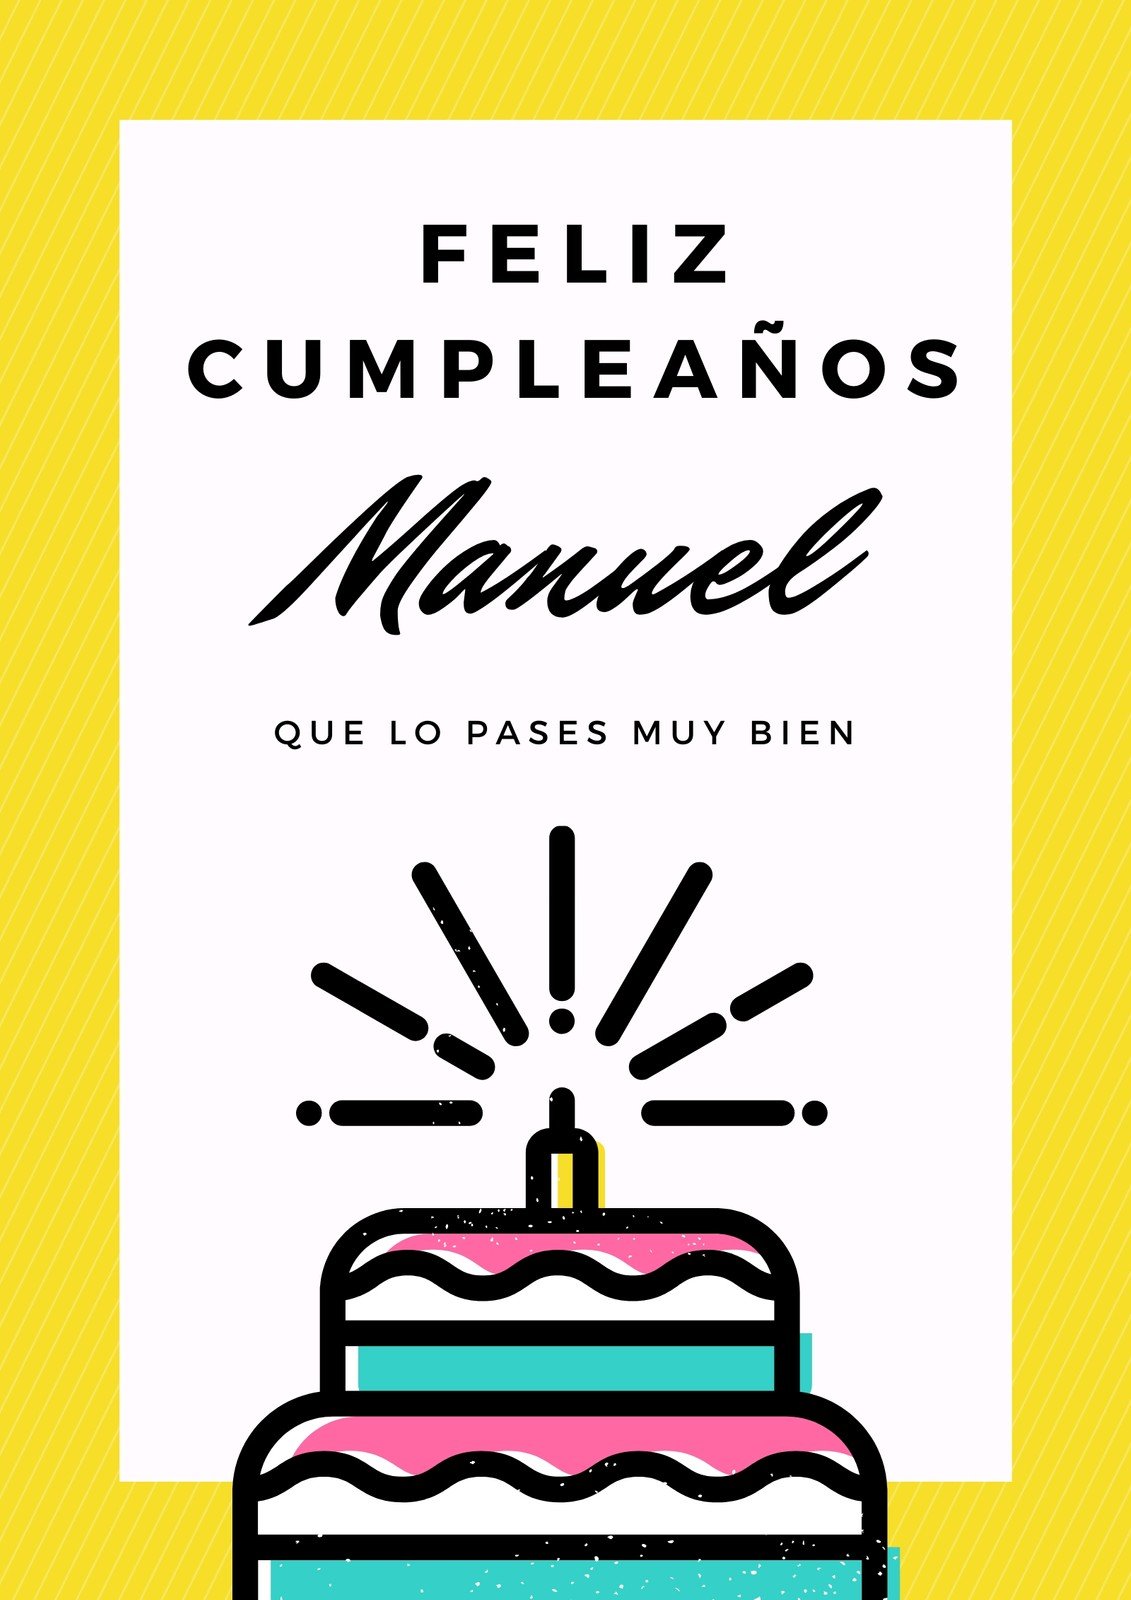 Estudiante Mencionar Hizo un contrato Plantillas para carteles de cumpleaños gratis | Canva